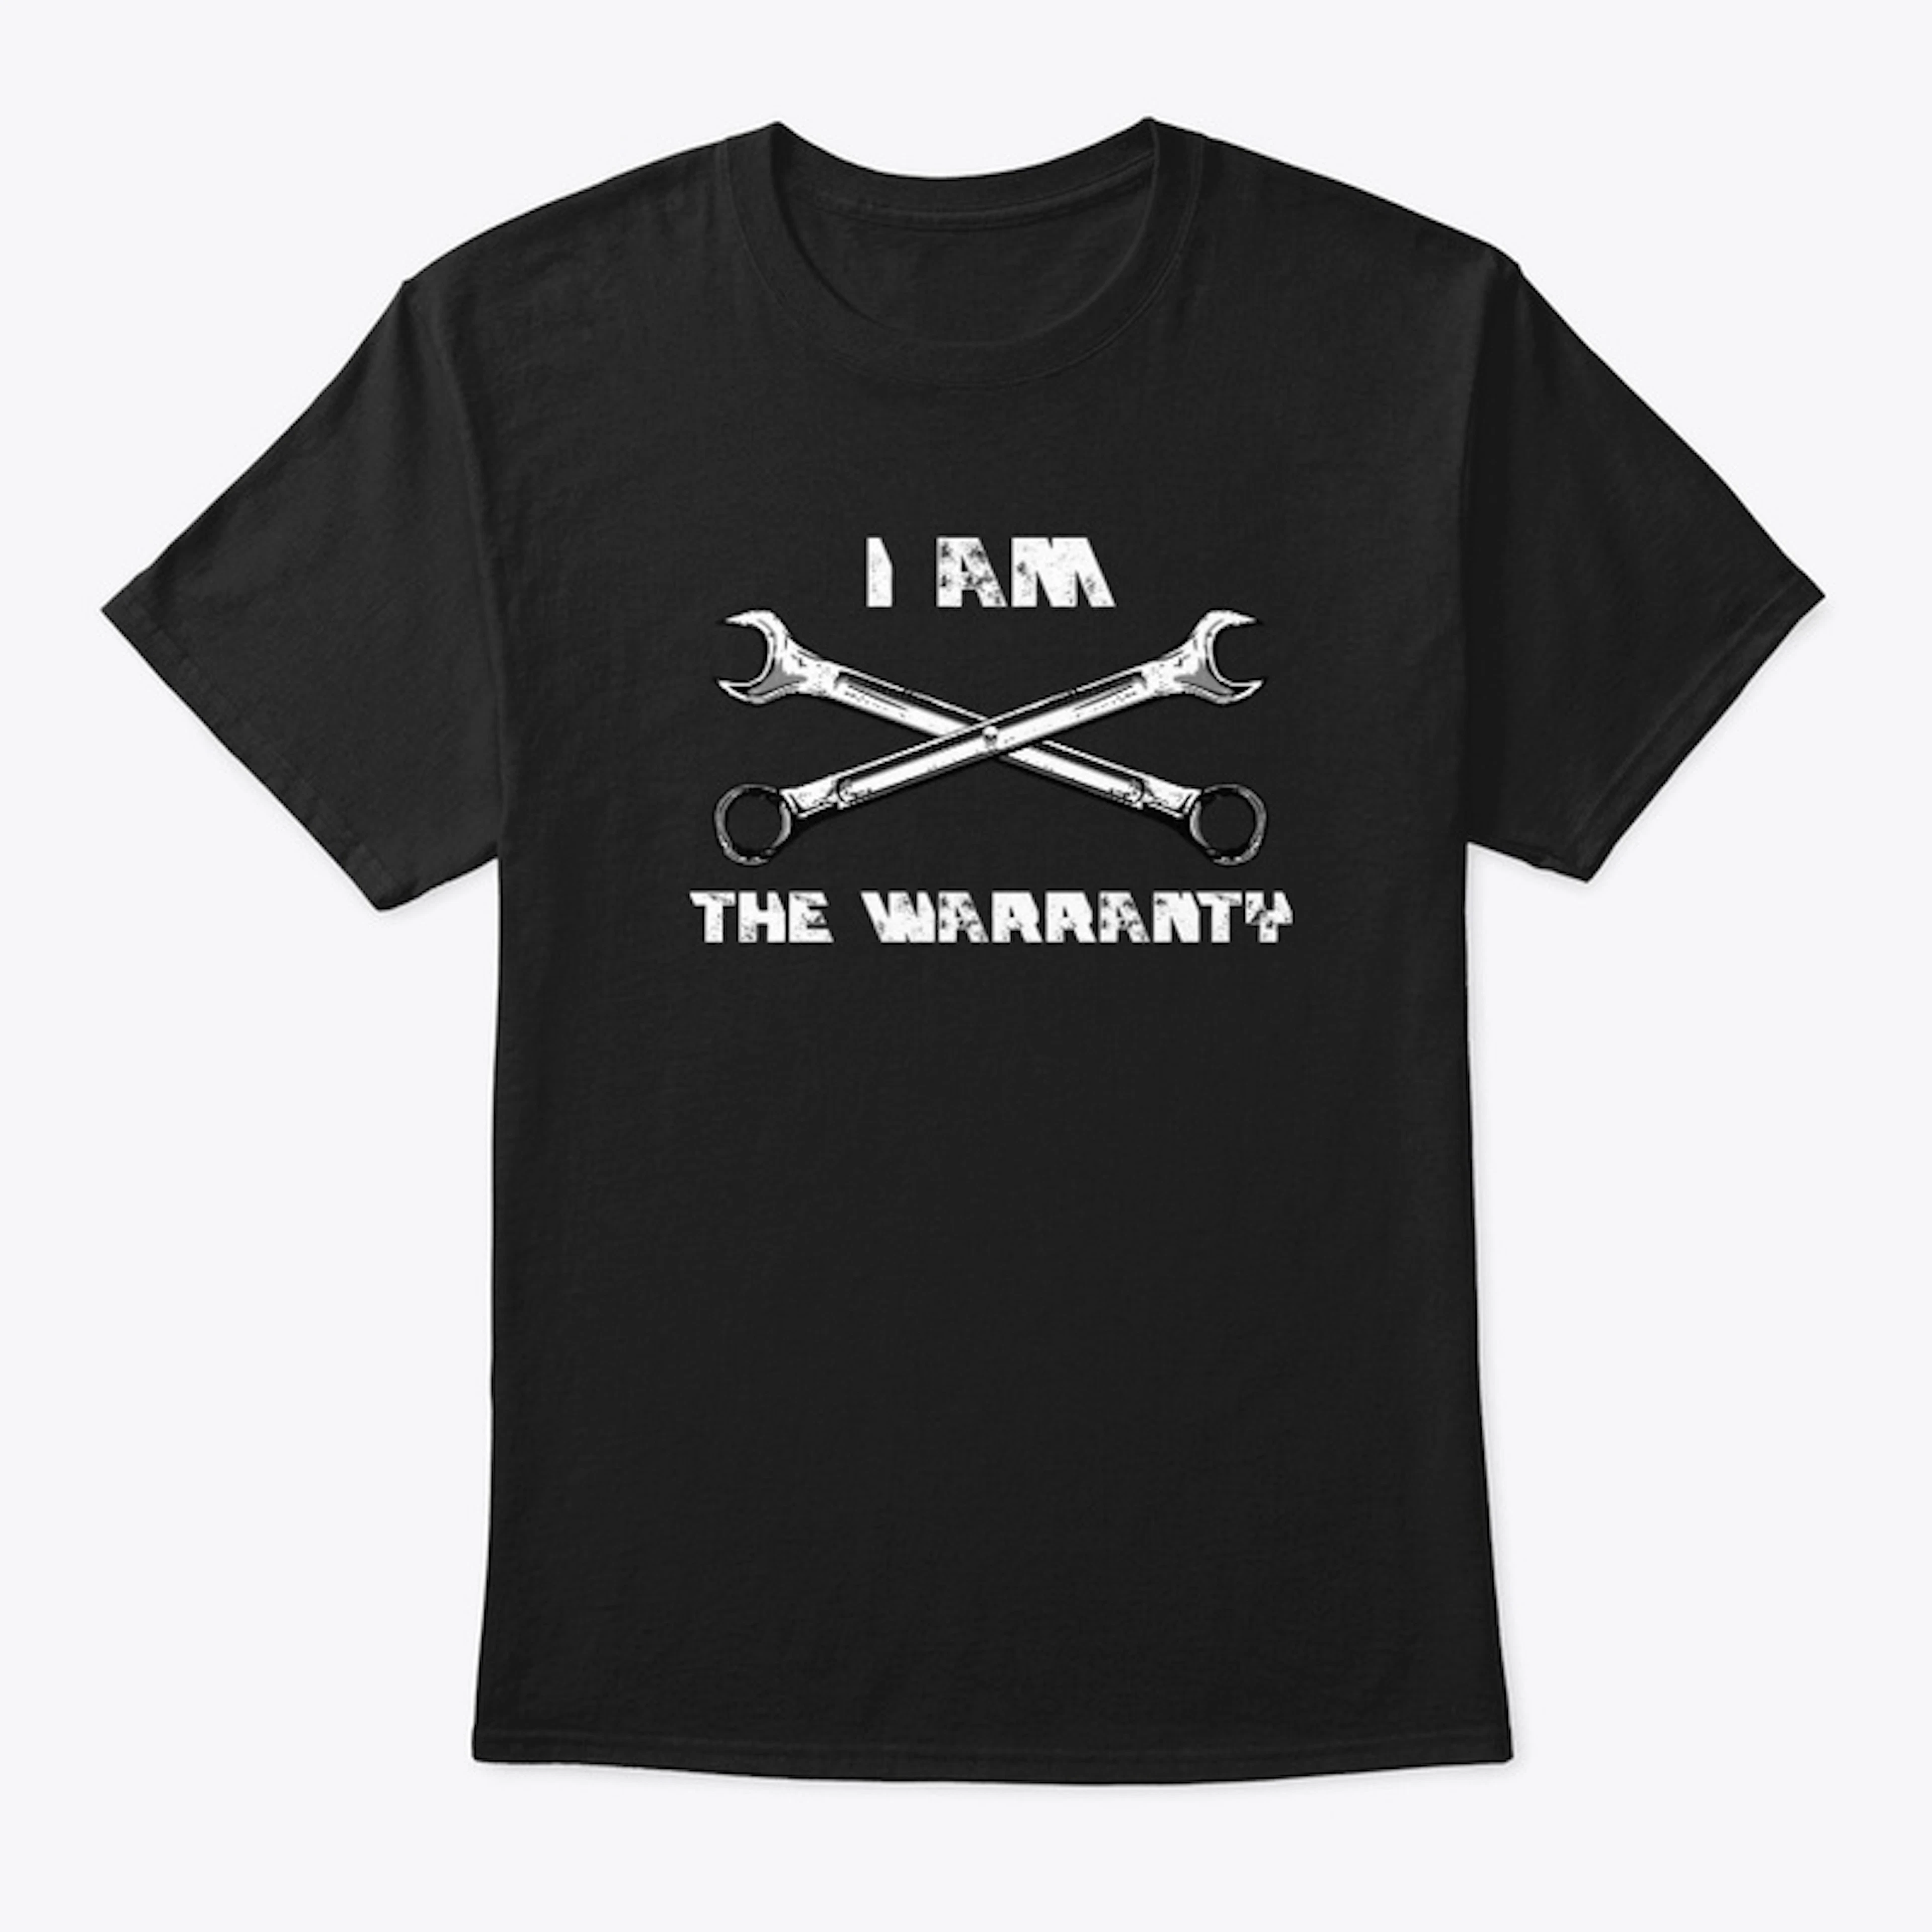 I AM THE WARRANTY-CAR DESIGN